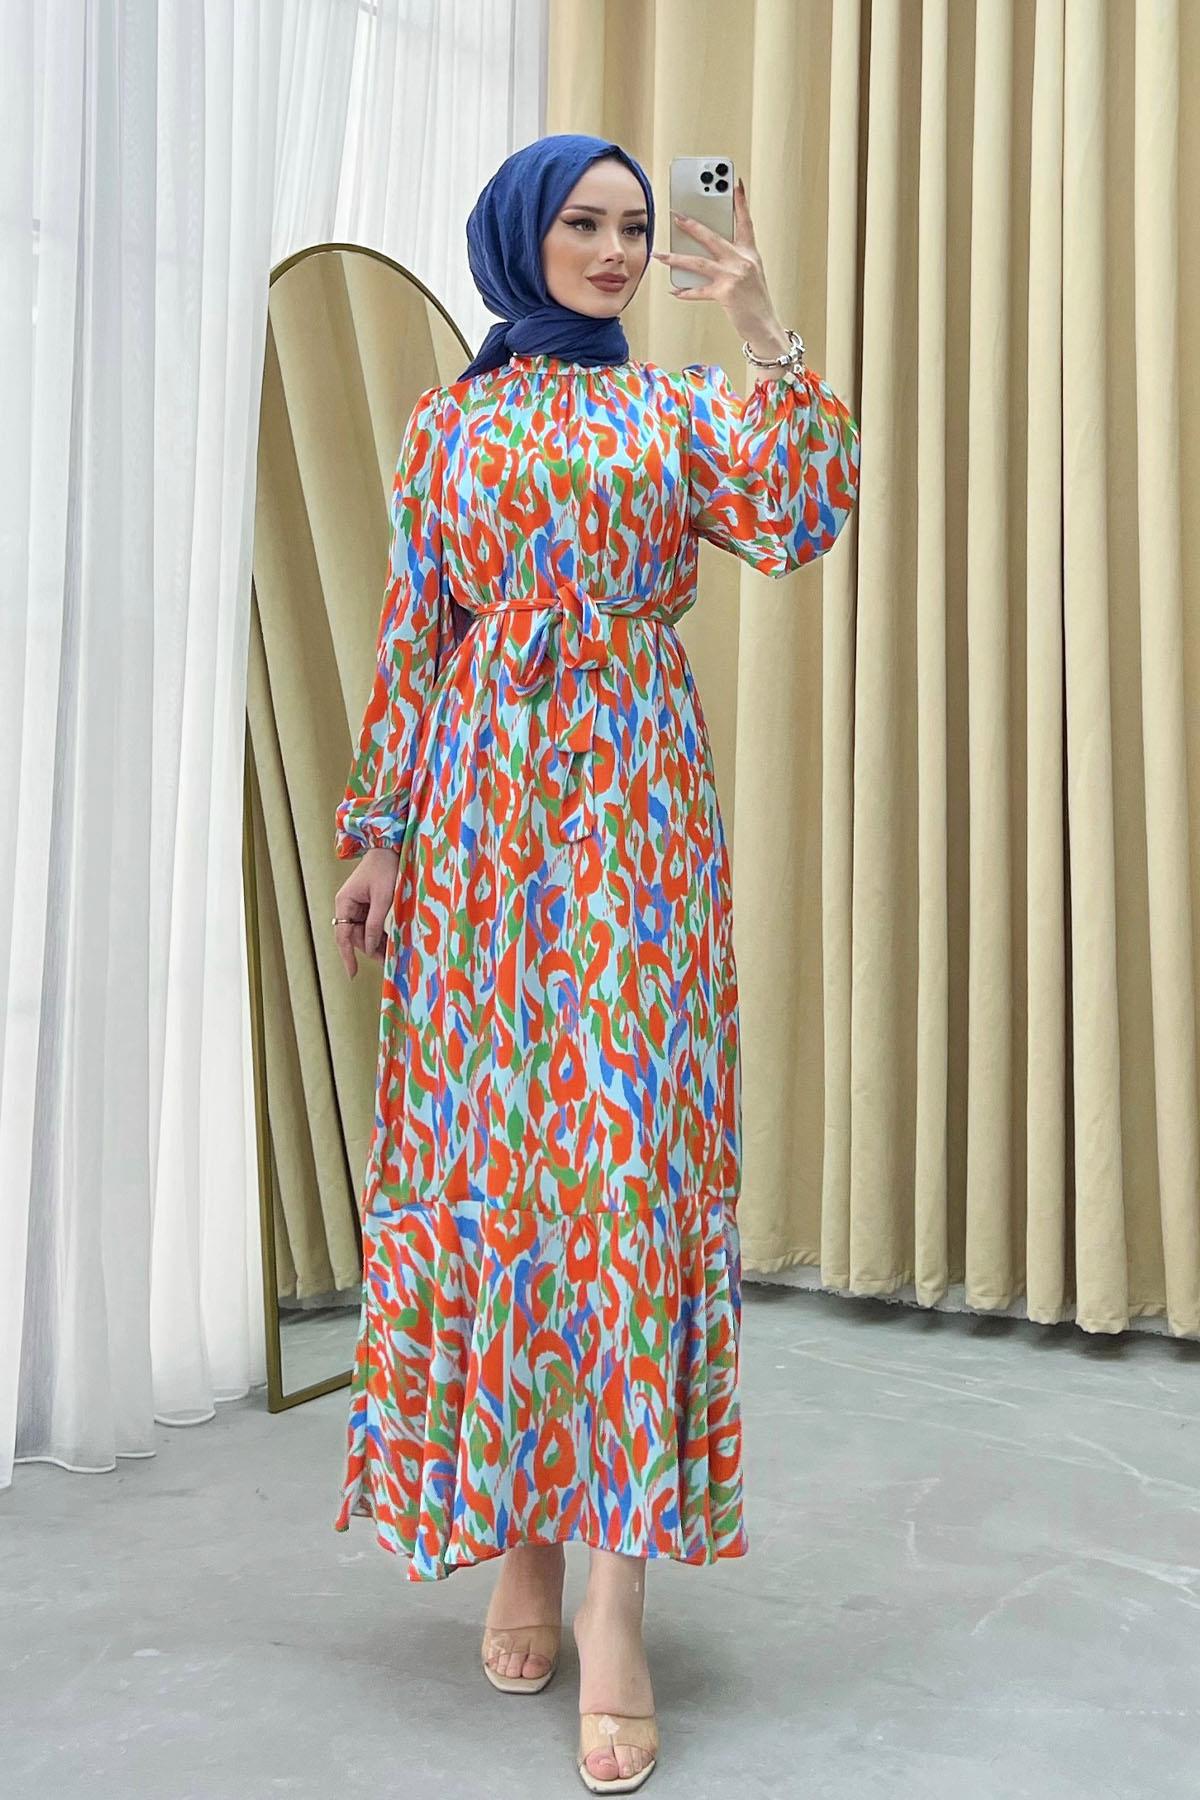 Etek Ucu Fırfırlı Desenlli Elbise-TURUNCU - Moda Ensar